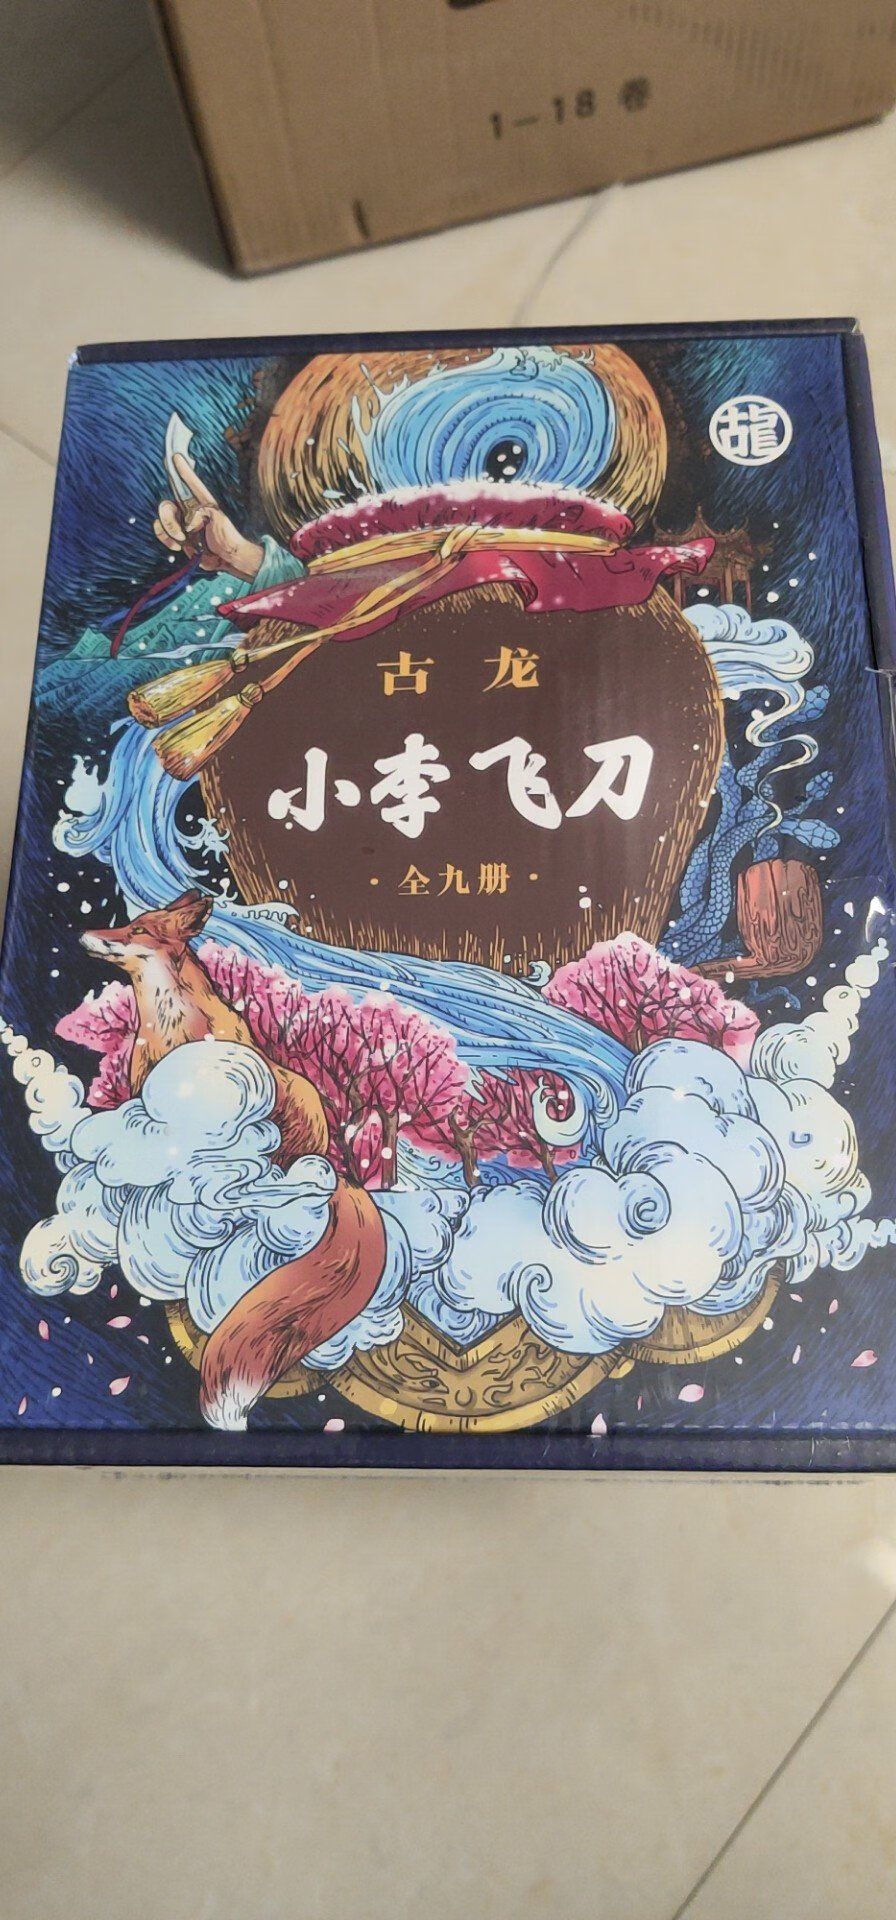 看古龙的书，长大的人都是很酷的。每一个曾经的中国少年的心中，都有一个武侠梦。